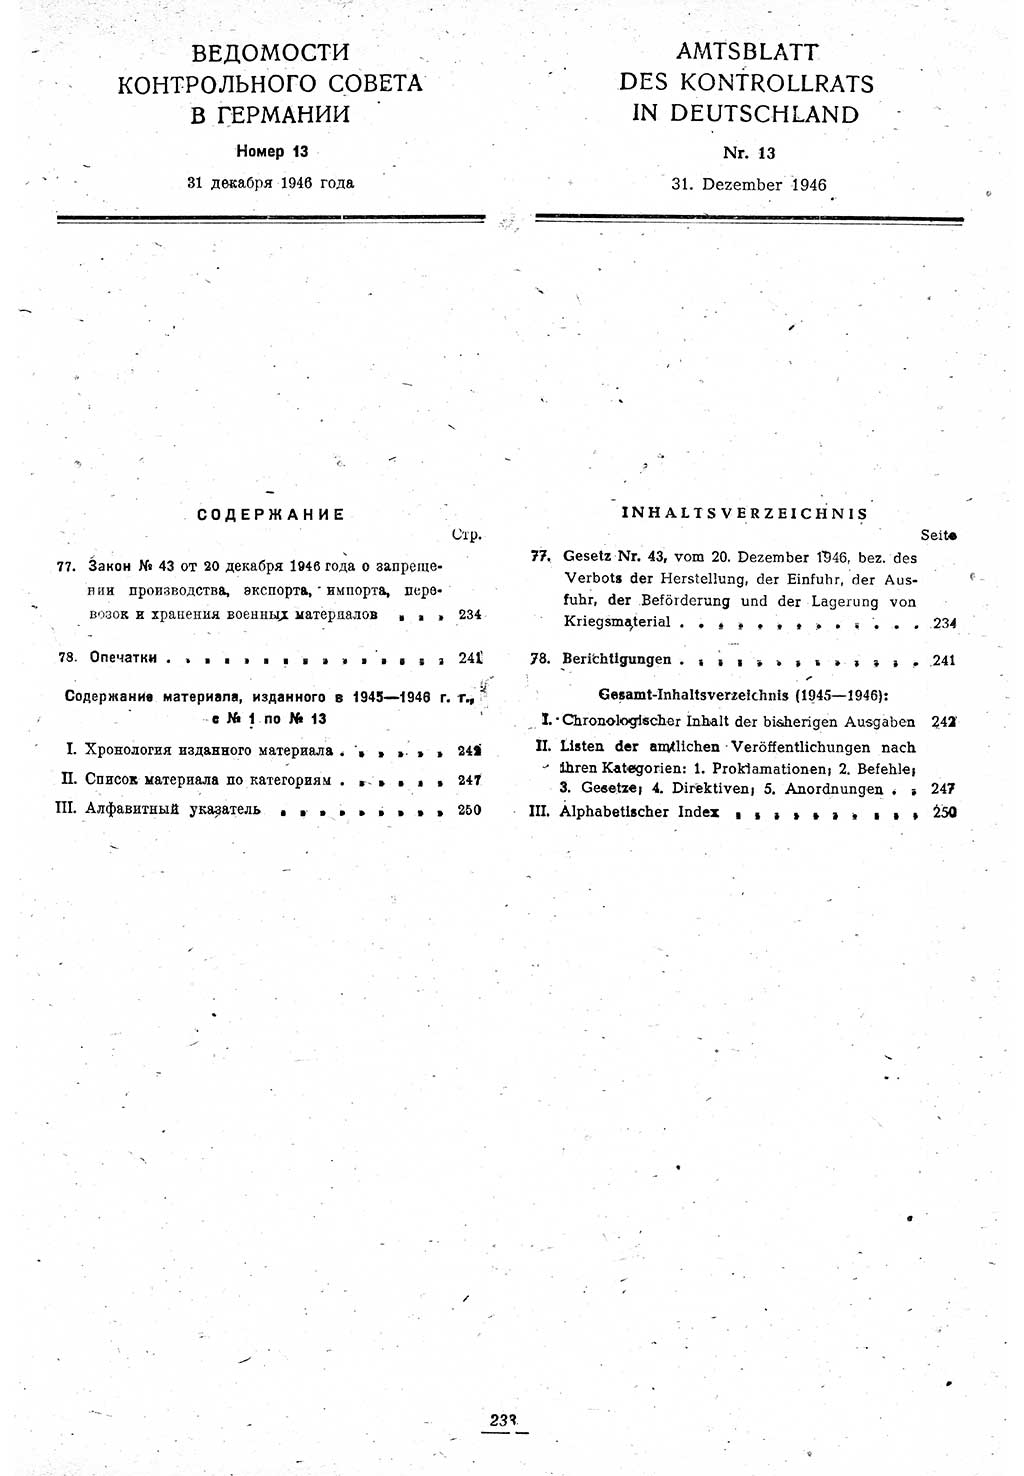 Amtsblatt des Kontrollrats (ABlKR) in Deutschland 1946, Seite 233/2 (ABlKR Dtl. 1946, S. 233/2)